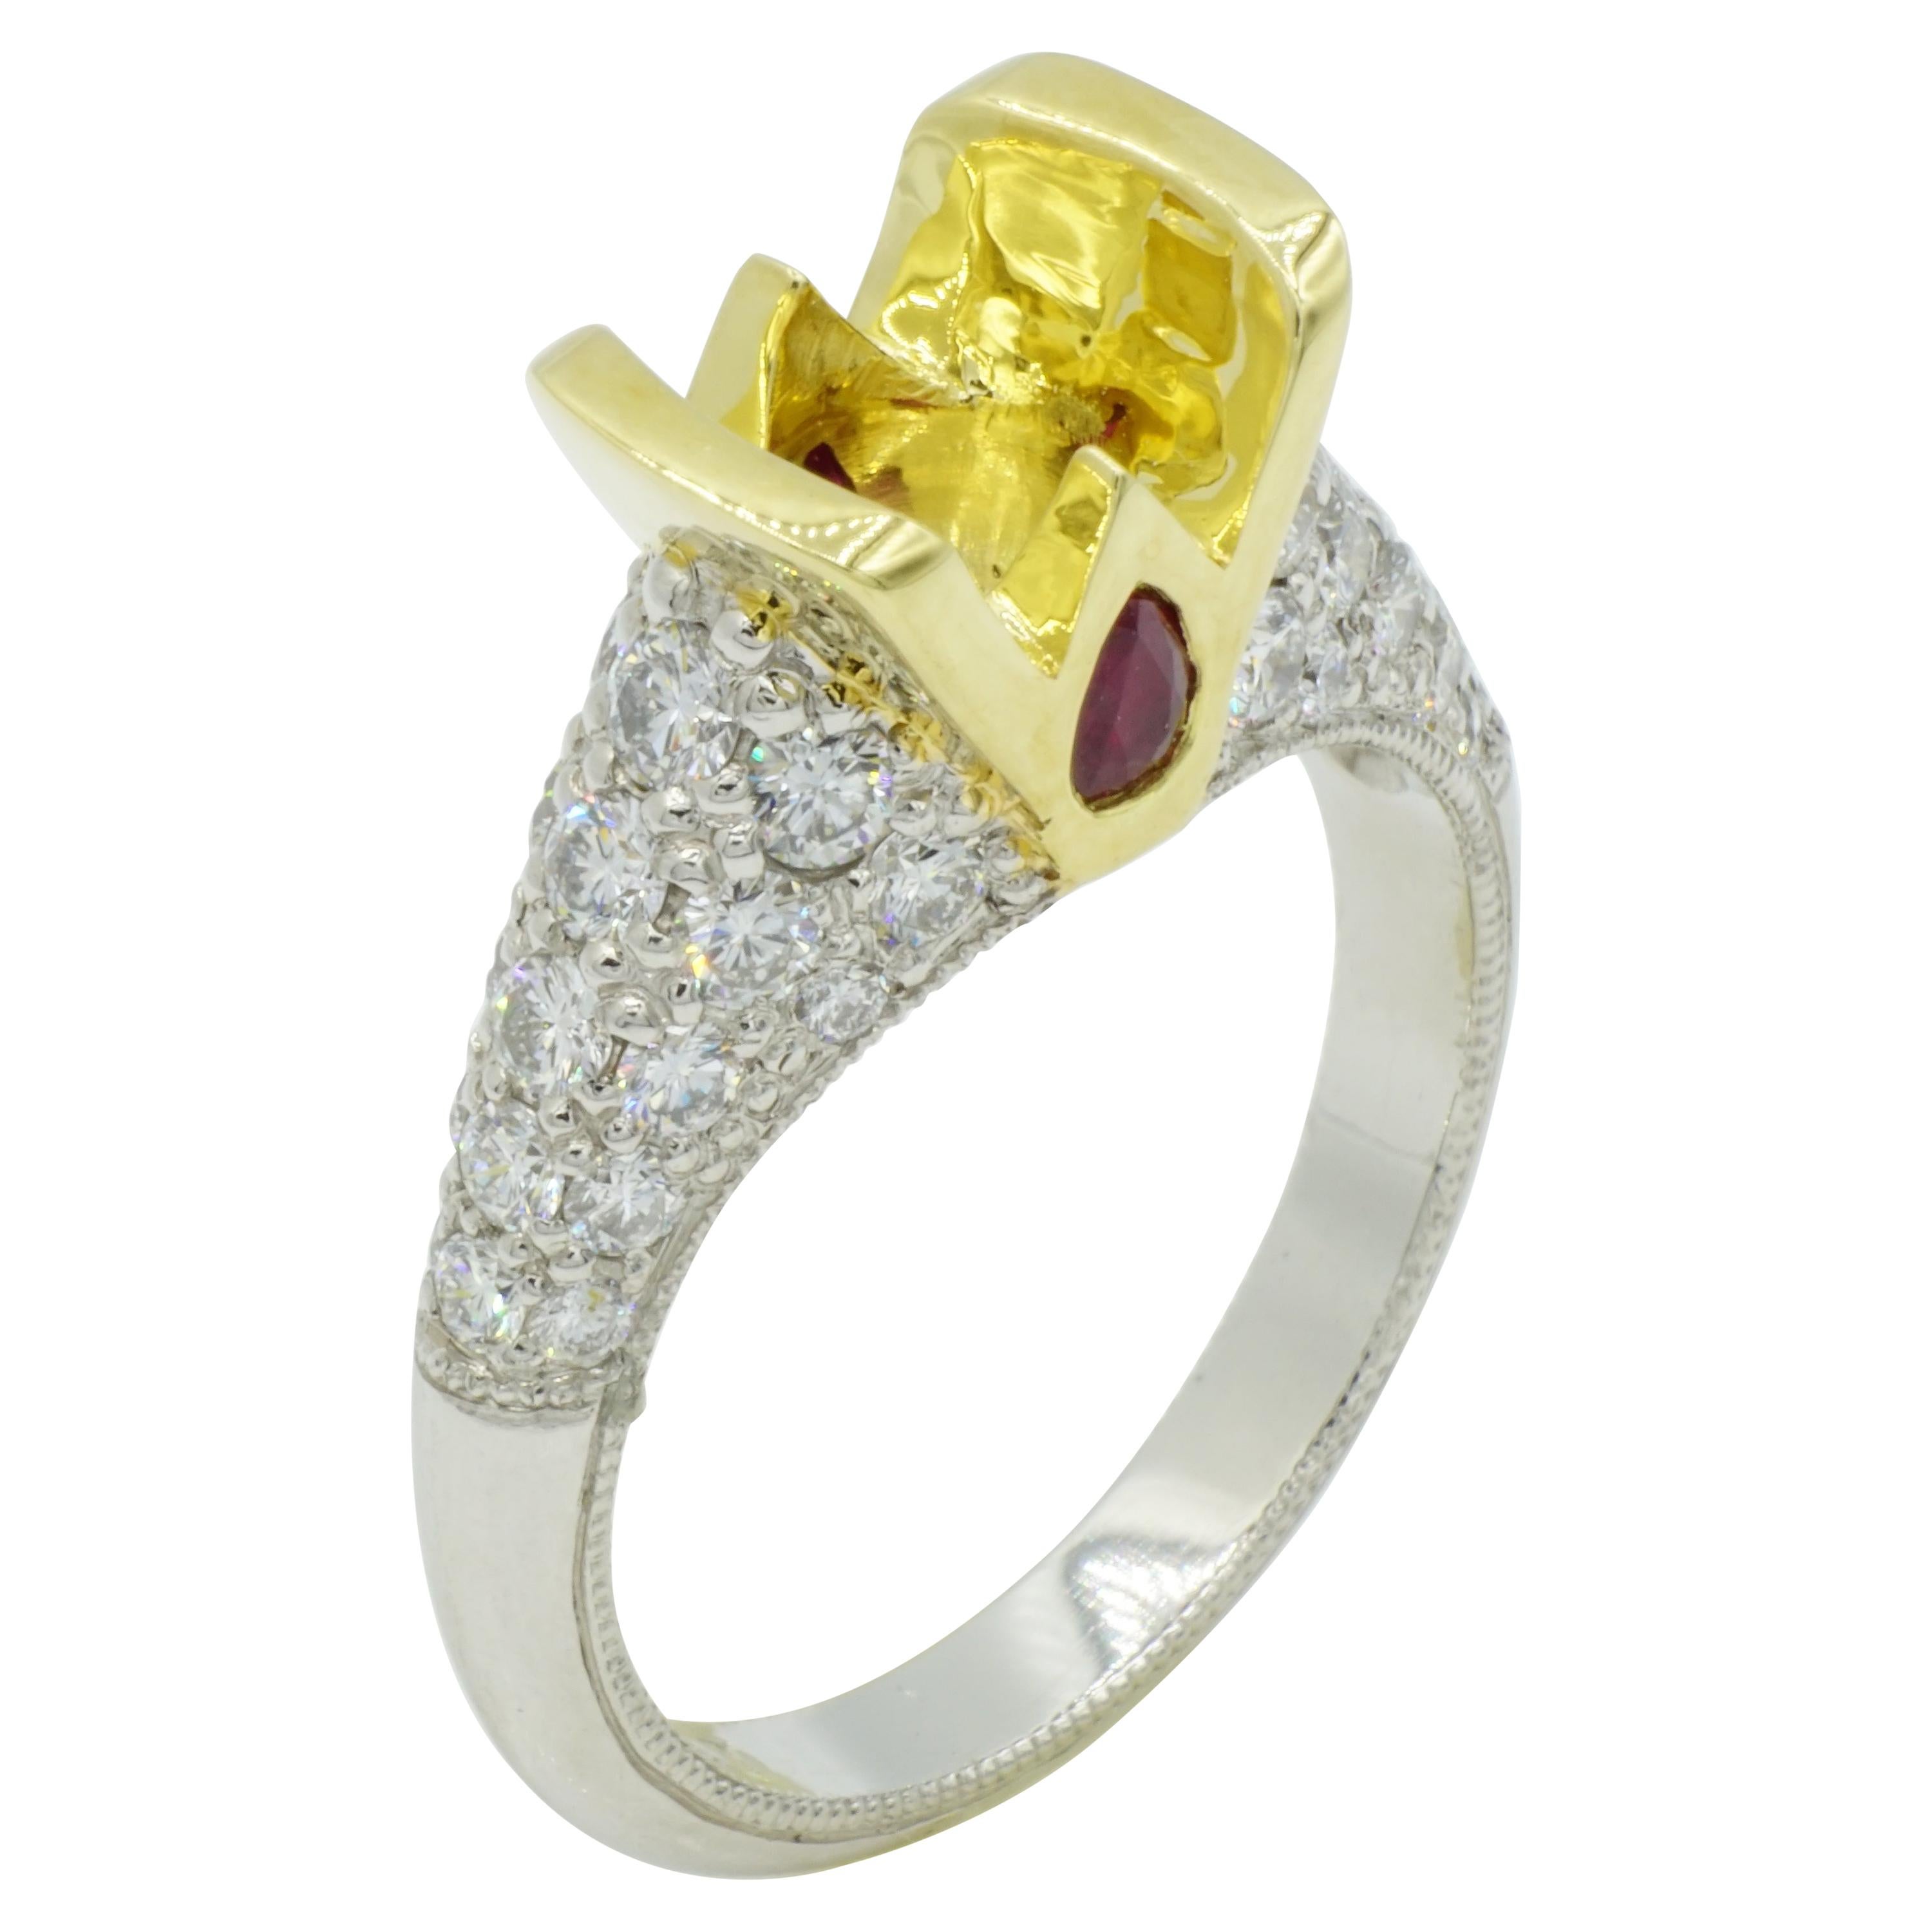 Pave Diamond Ruby Engagement Ring Platinum 18 Karat Yellow Gold Semi-Mount Ring